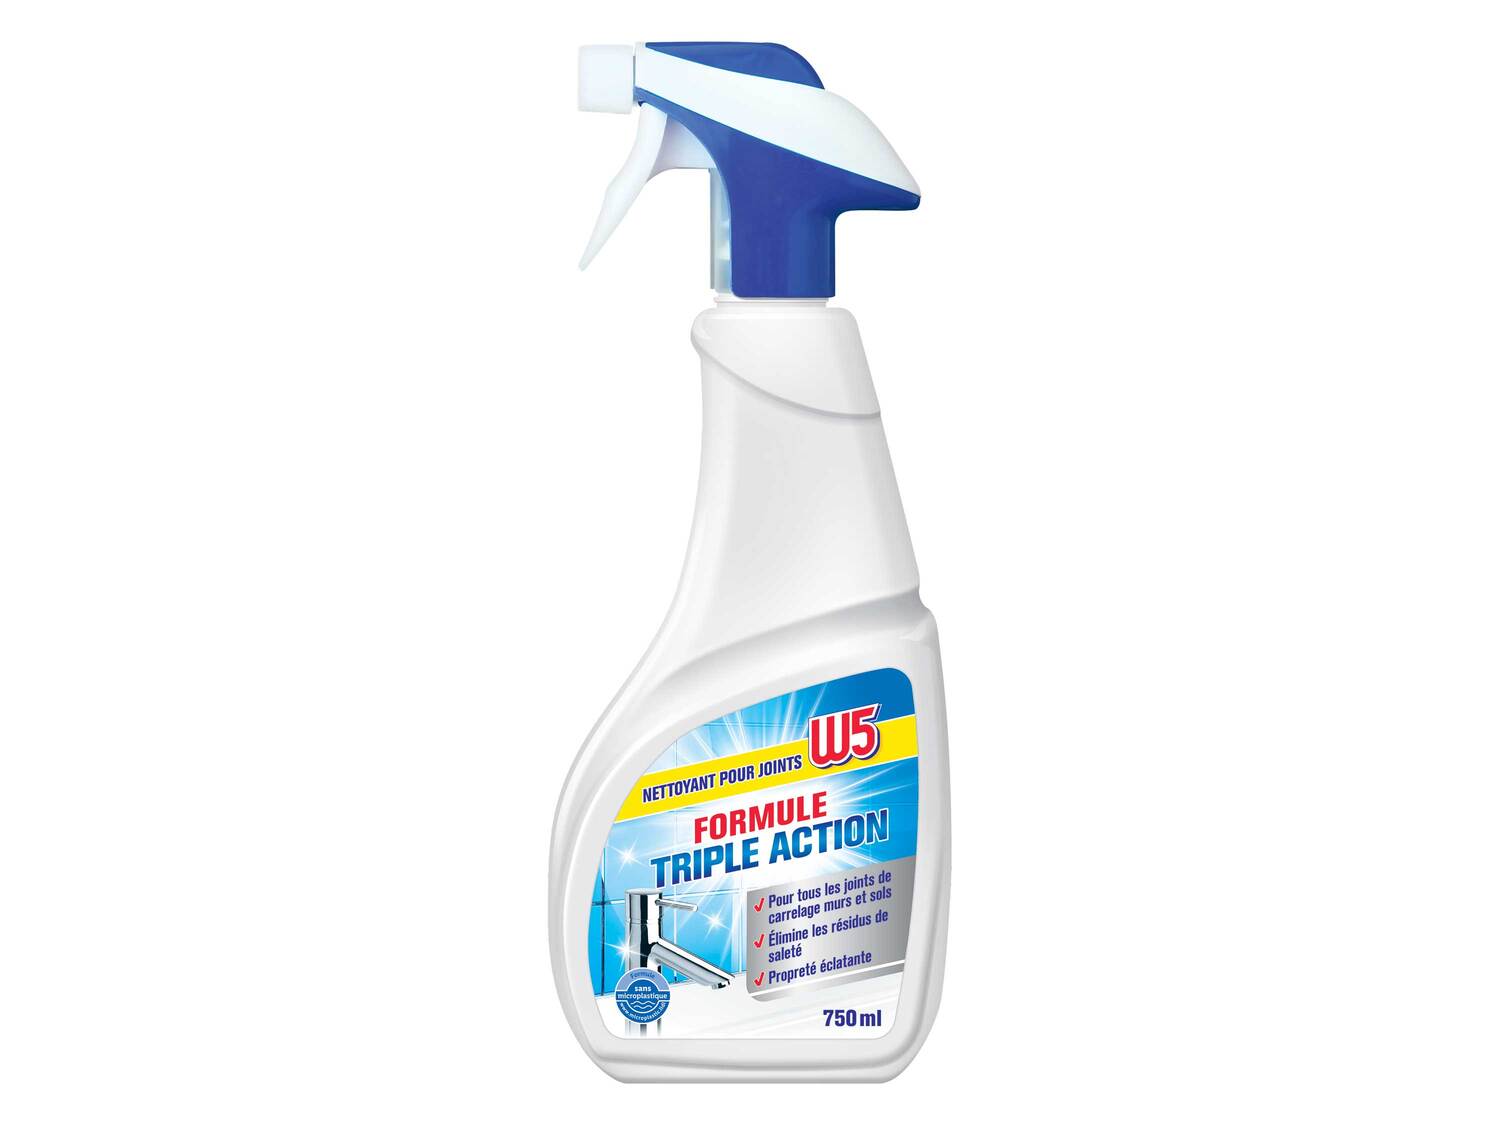 Spray nettoyant , le prix 1.49 €  
-  Au choix : anti-moisissures ou pour joints